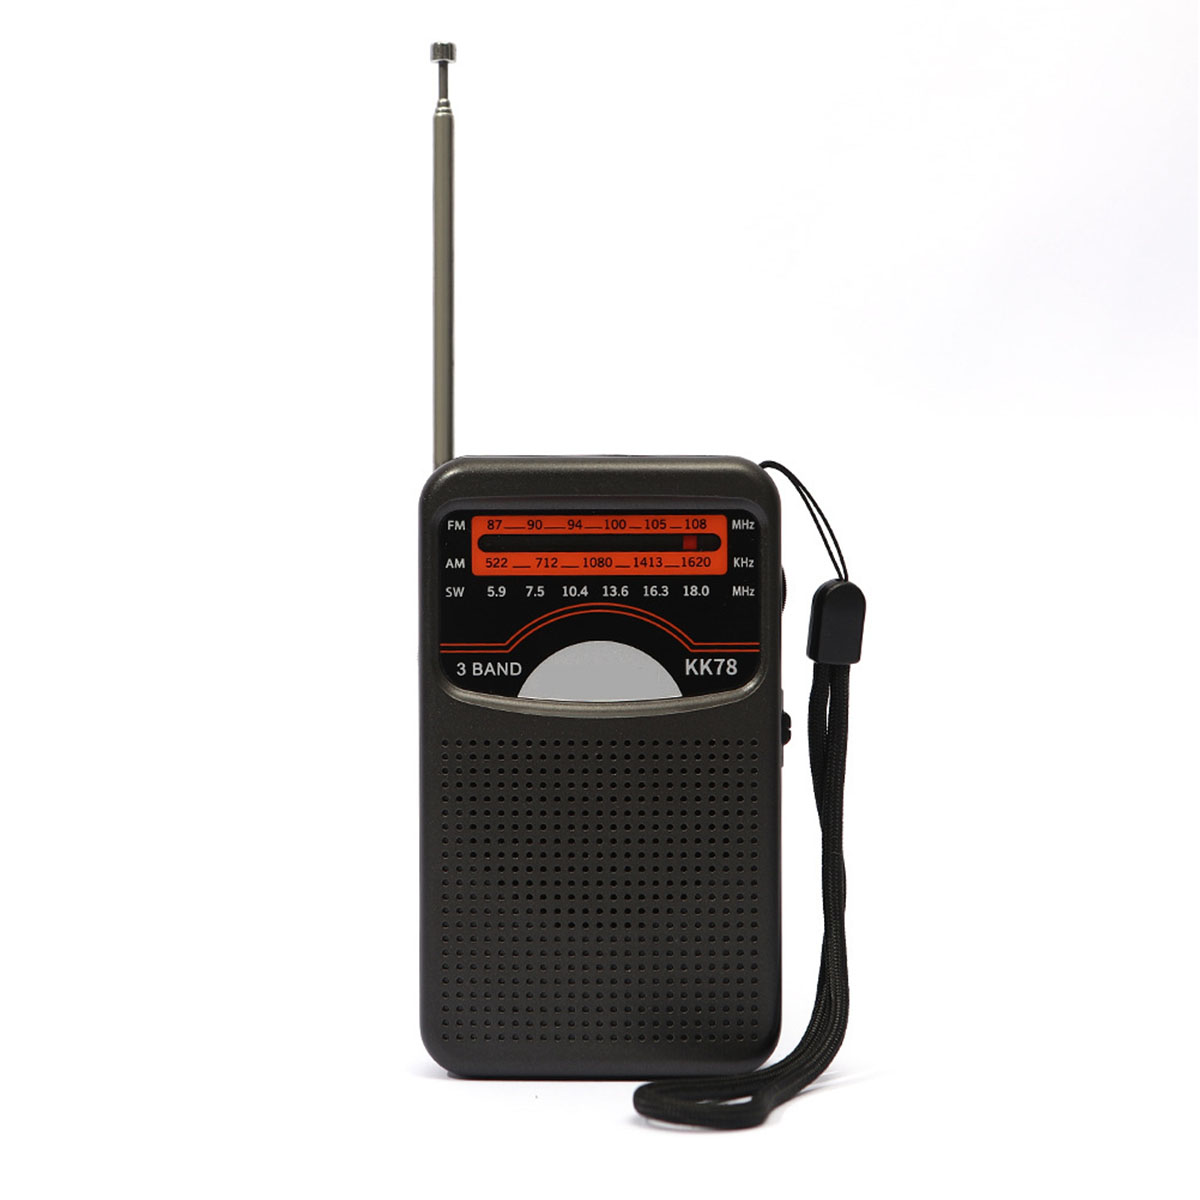 BRIGHTAKE Radio Vielfalt: Einfache Bedienung, USB-Schnittstelle Kristallklang, Schwarz Radio, FM, AM